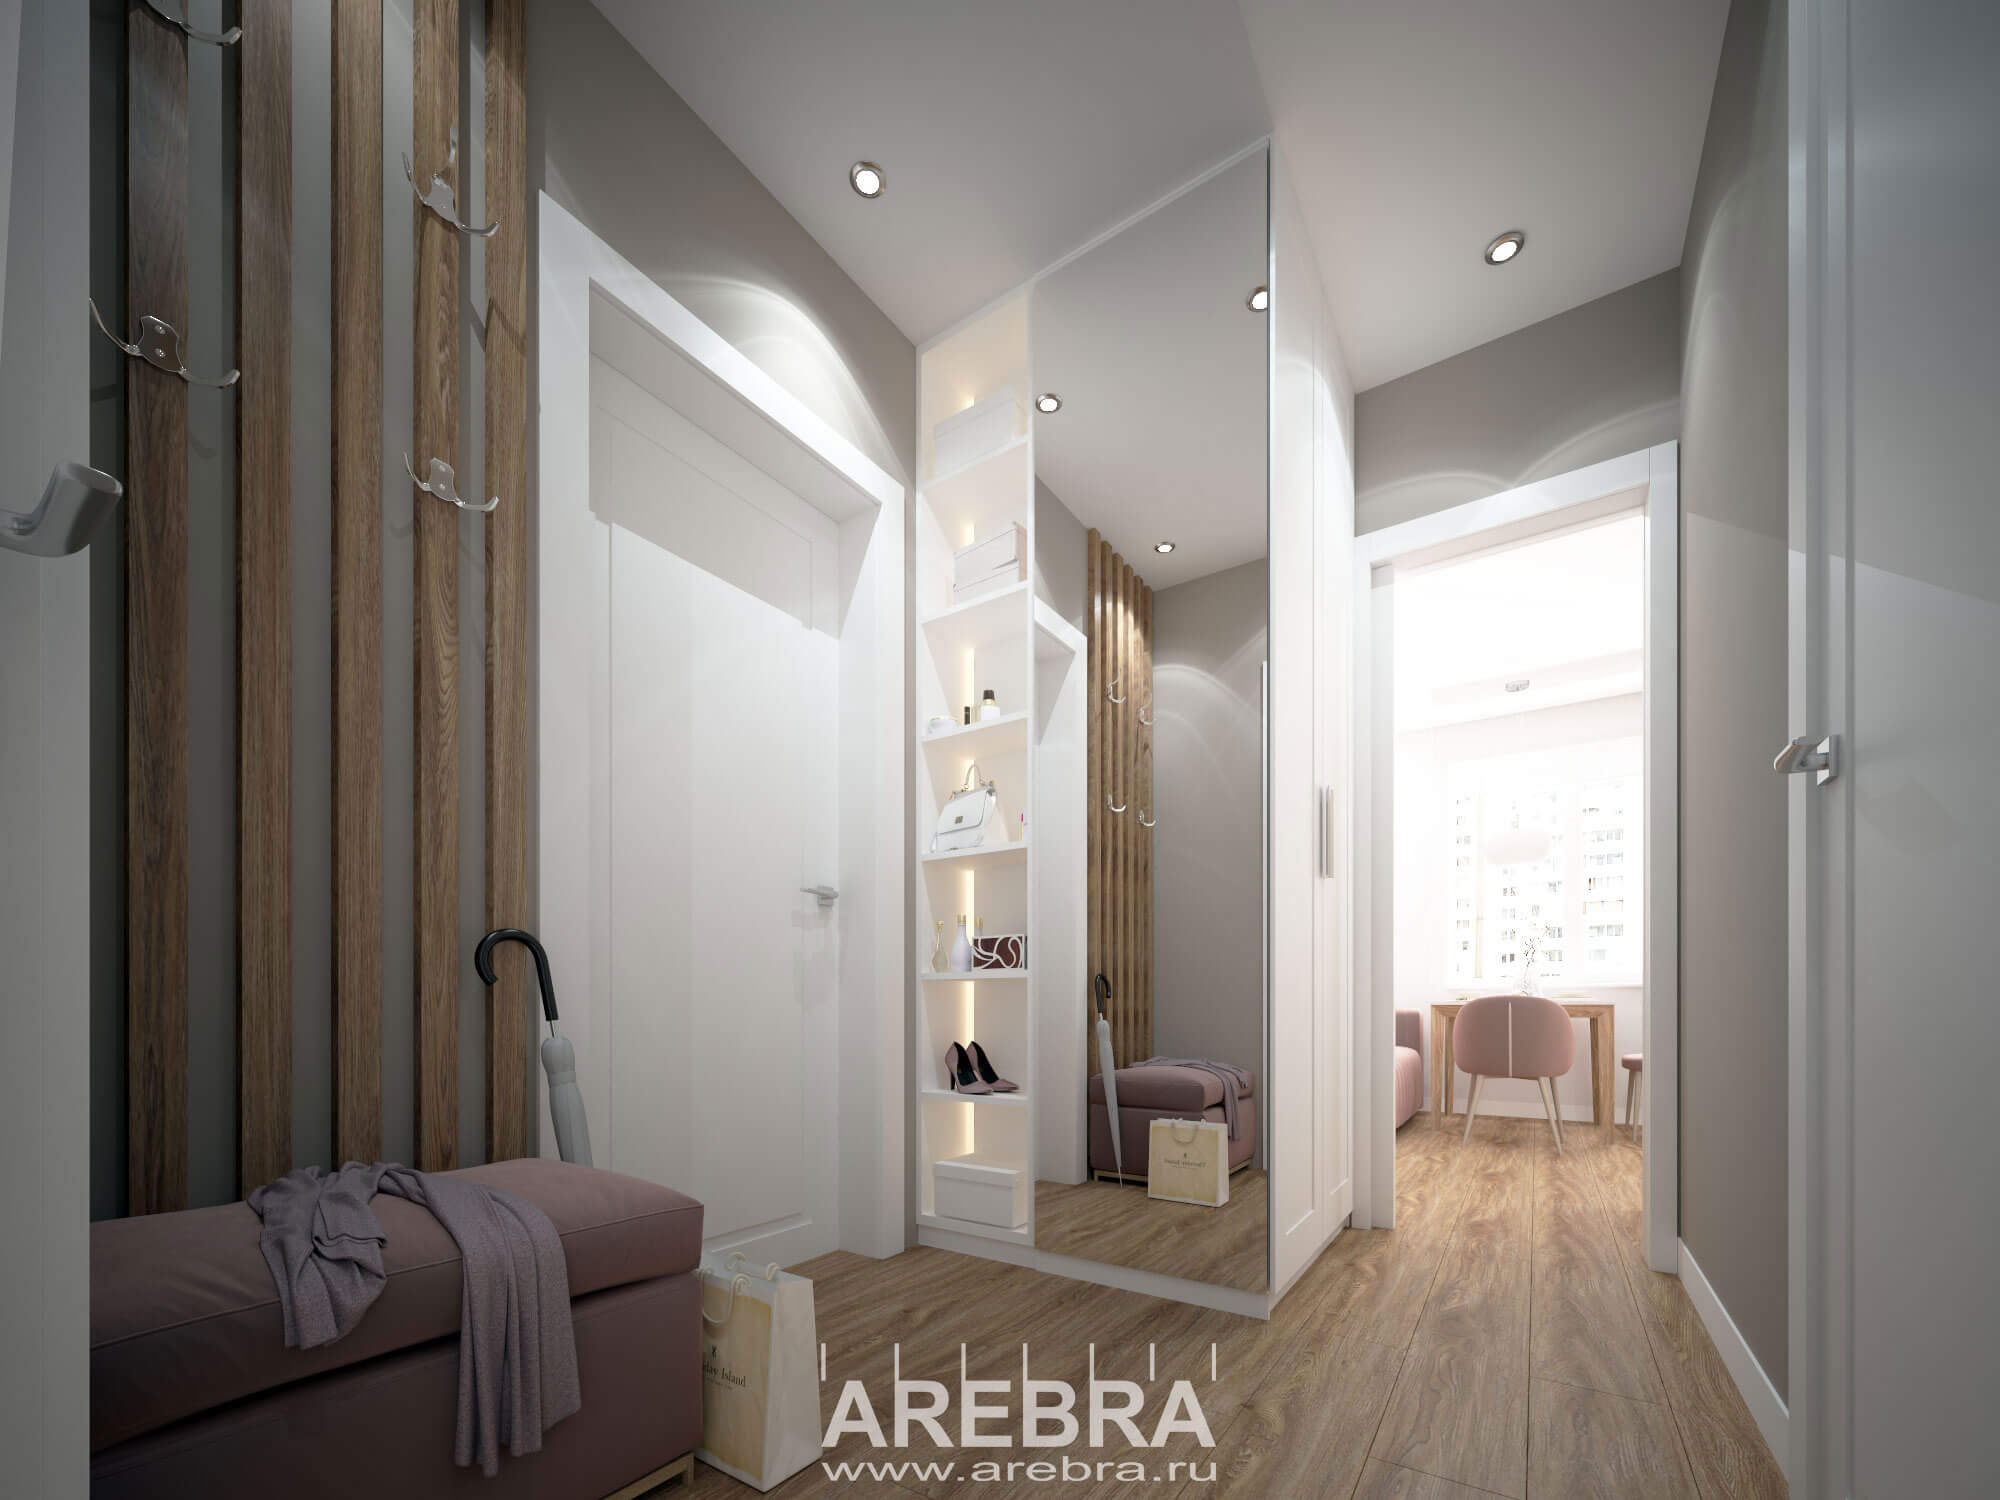 Дизайн проект интерьера однокомнатной квартиры общей площадью 37,6м2 , г. Санкт-Петербург